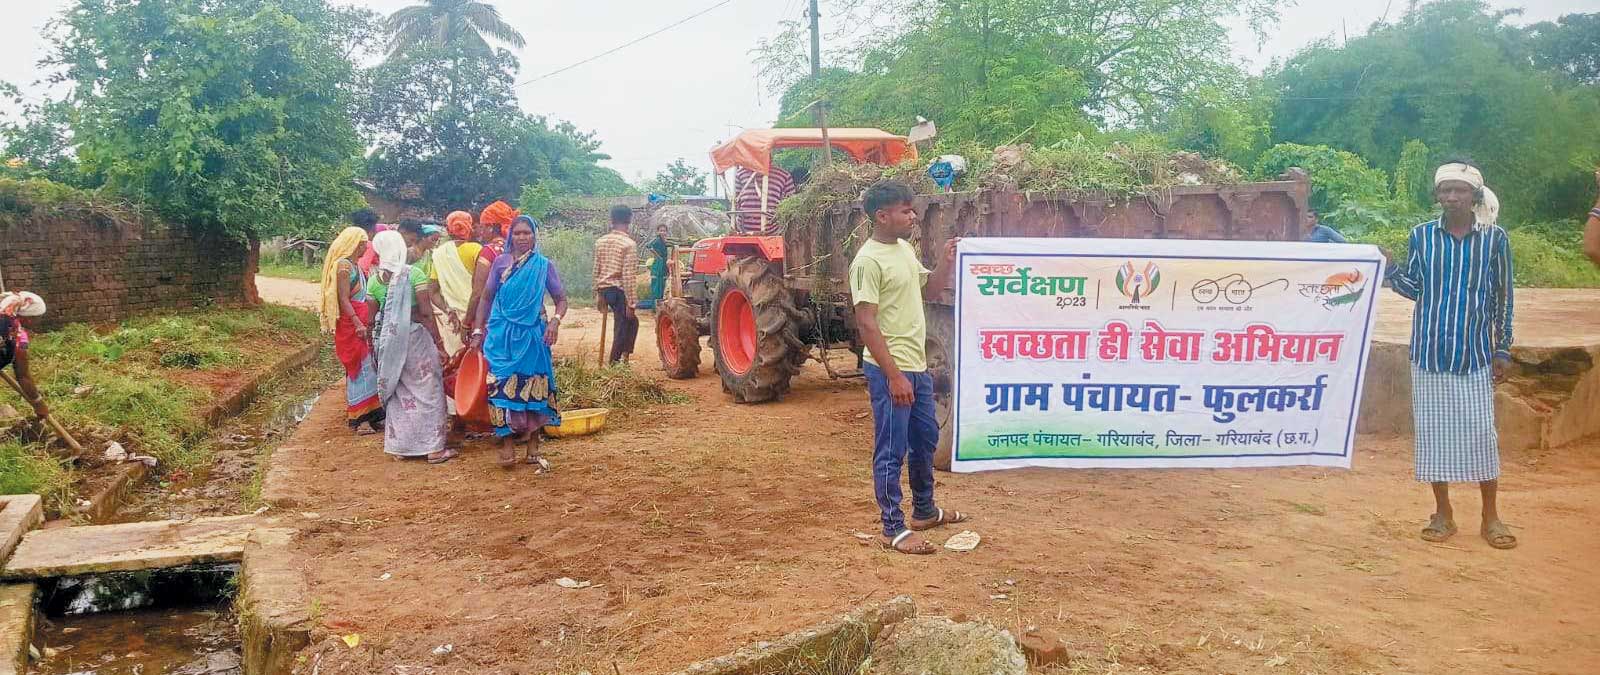 गांव को स्वच्छ रखने ग्रामीण उतरे सफाई अभियान में